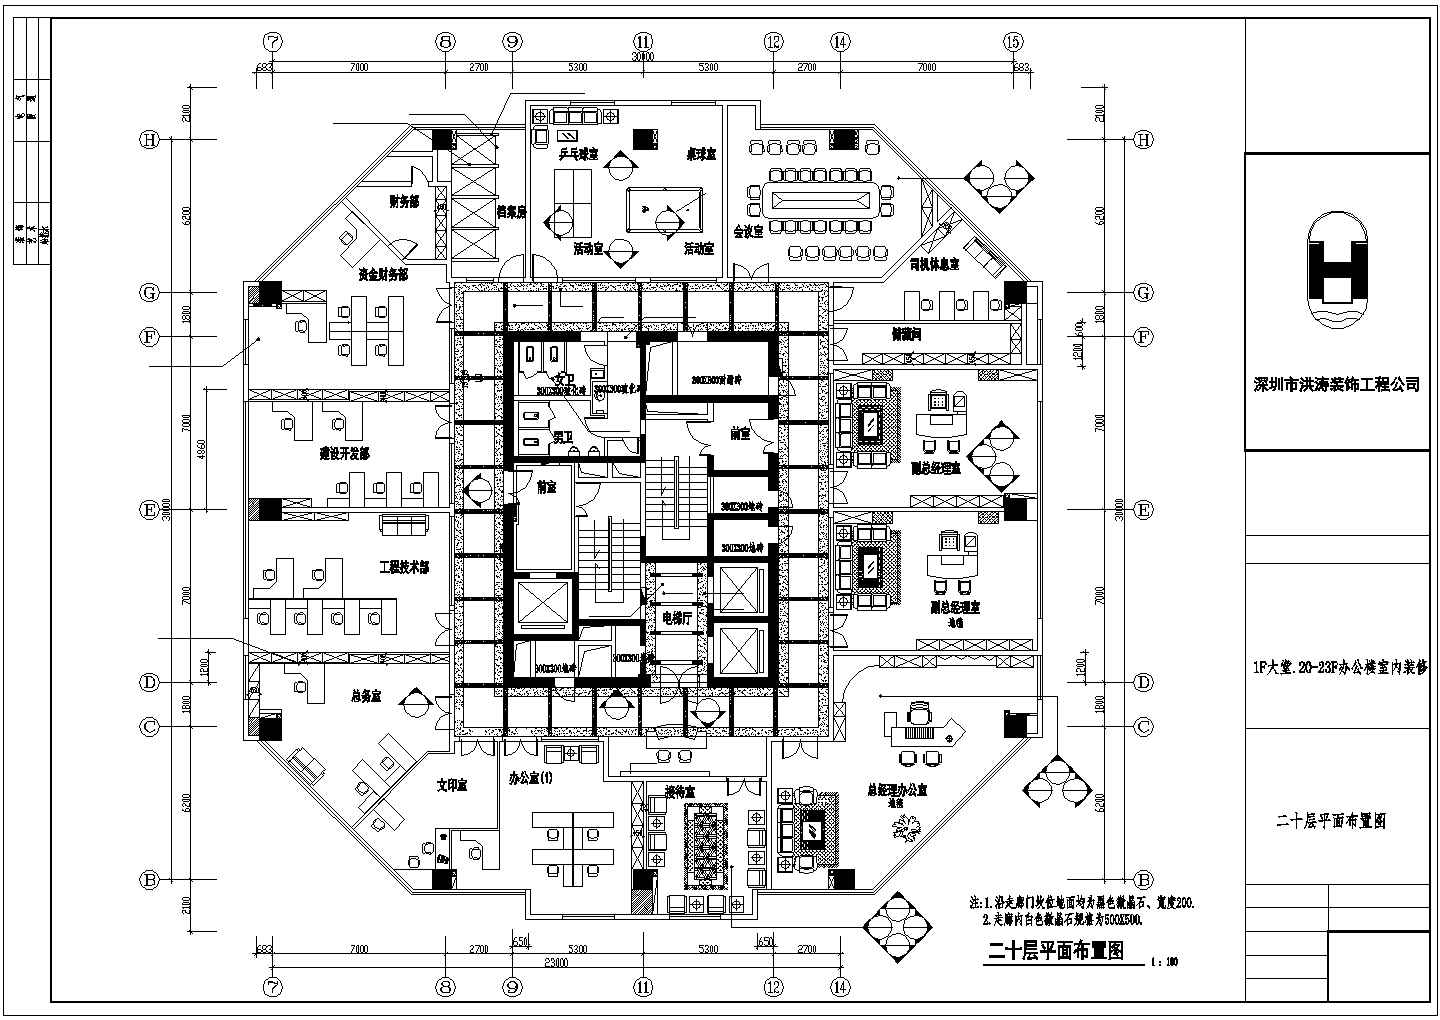 福建交通综合大楼1F大堂.21-23F办公楼室内装修设计施工图纸